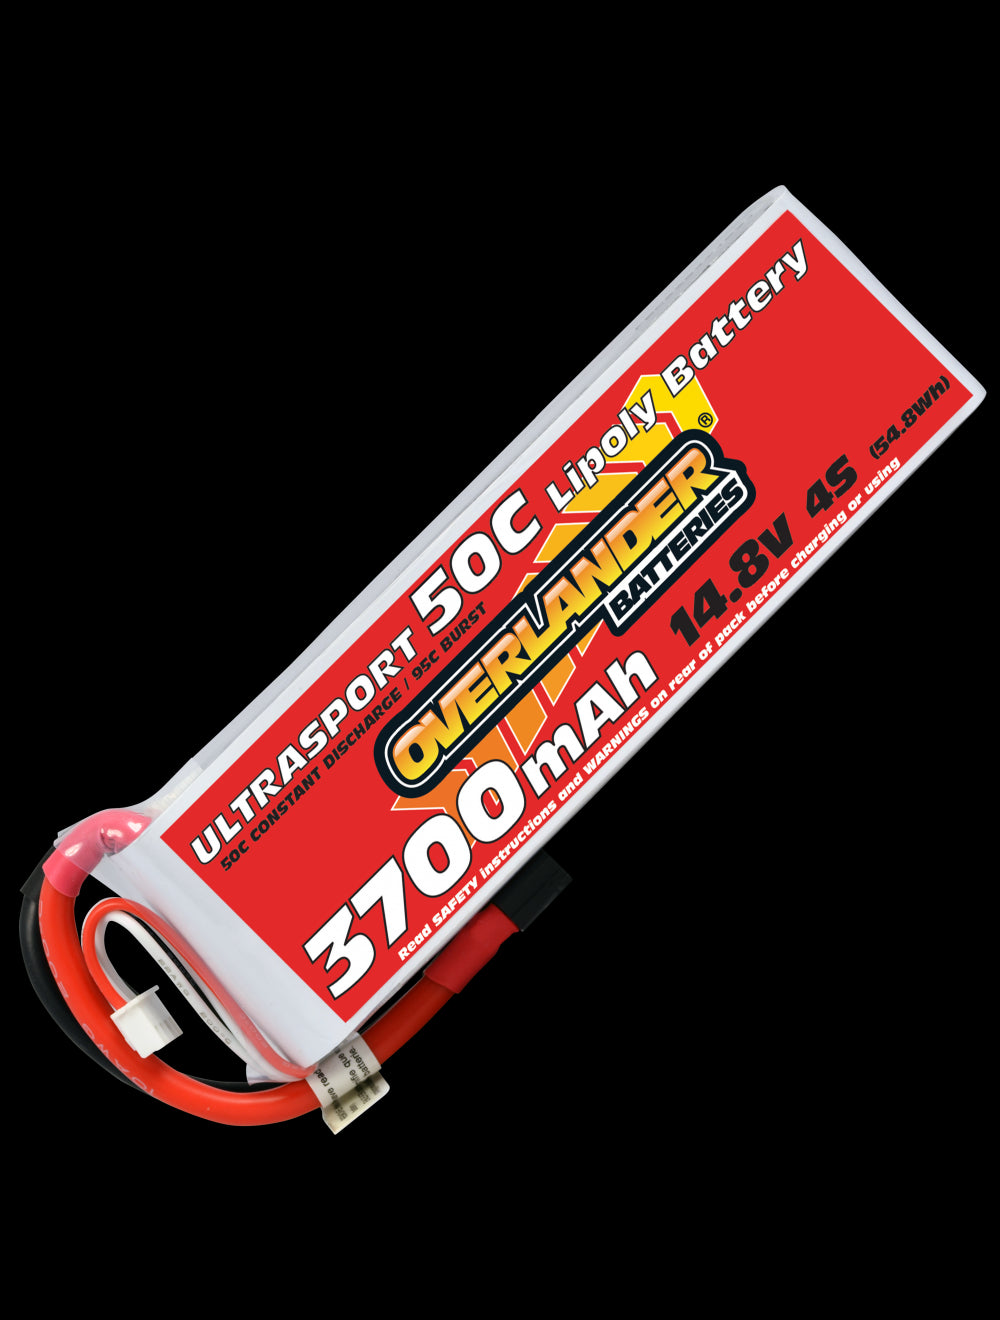 Overlander 3700mAh 14.8V 4S 50C Ultrasport LiPo Battery - EC5 Connector 2629